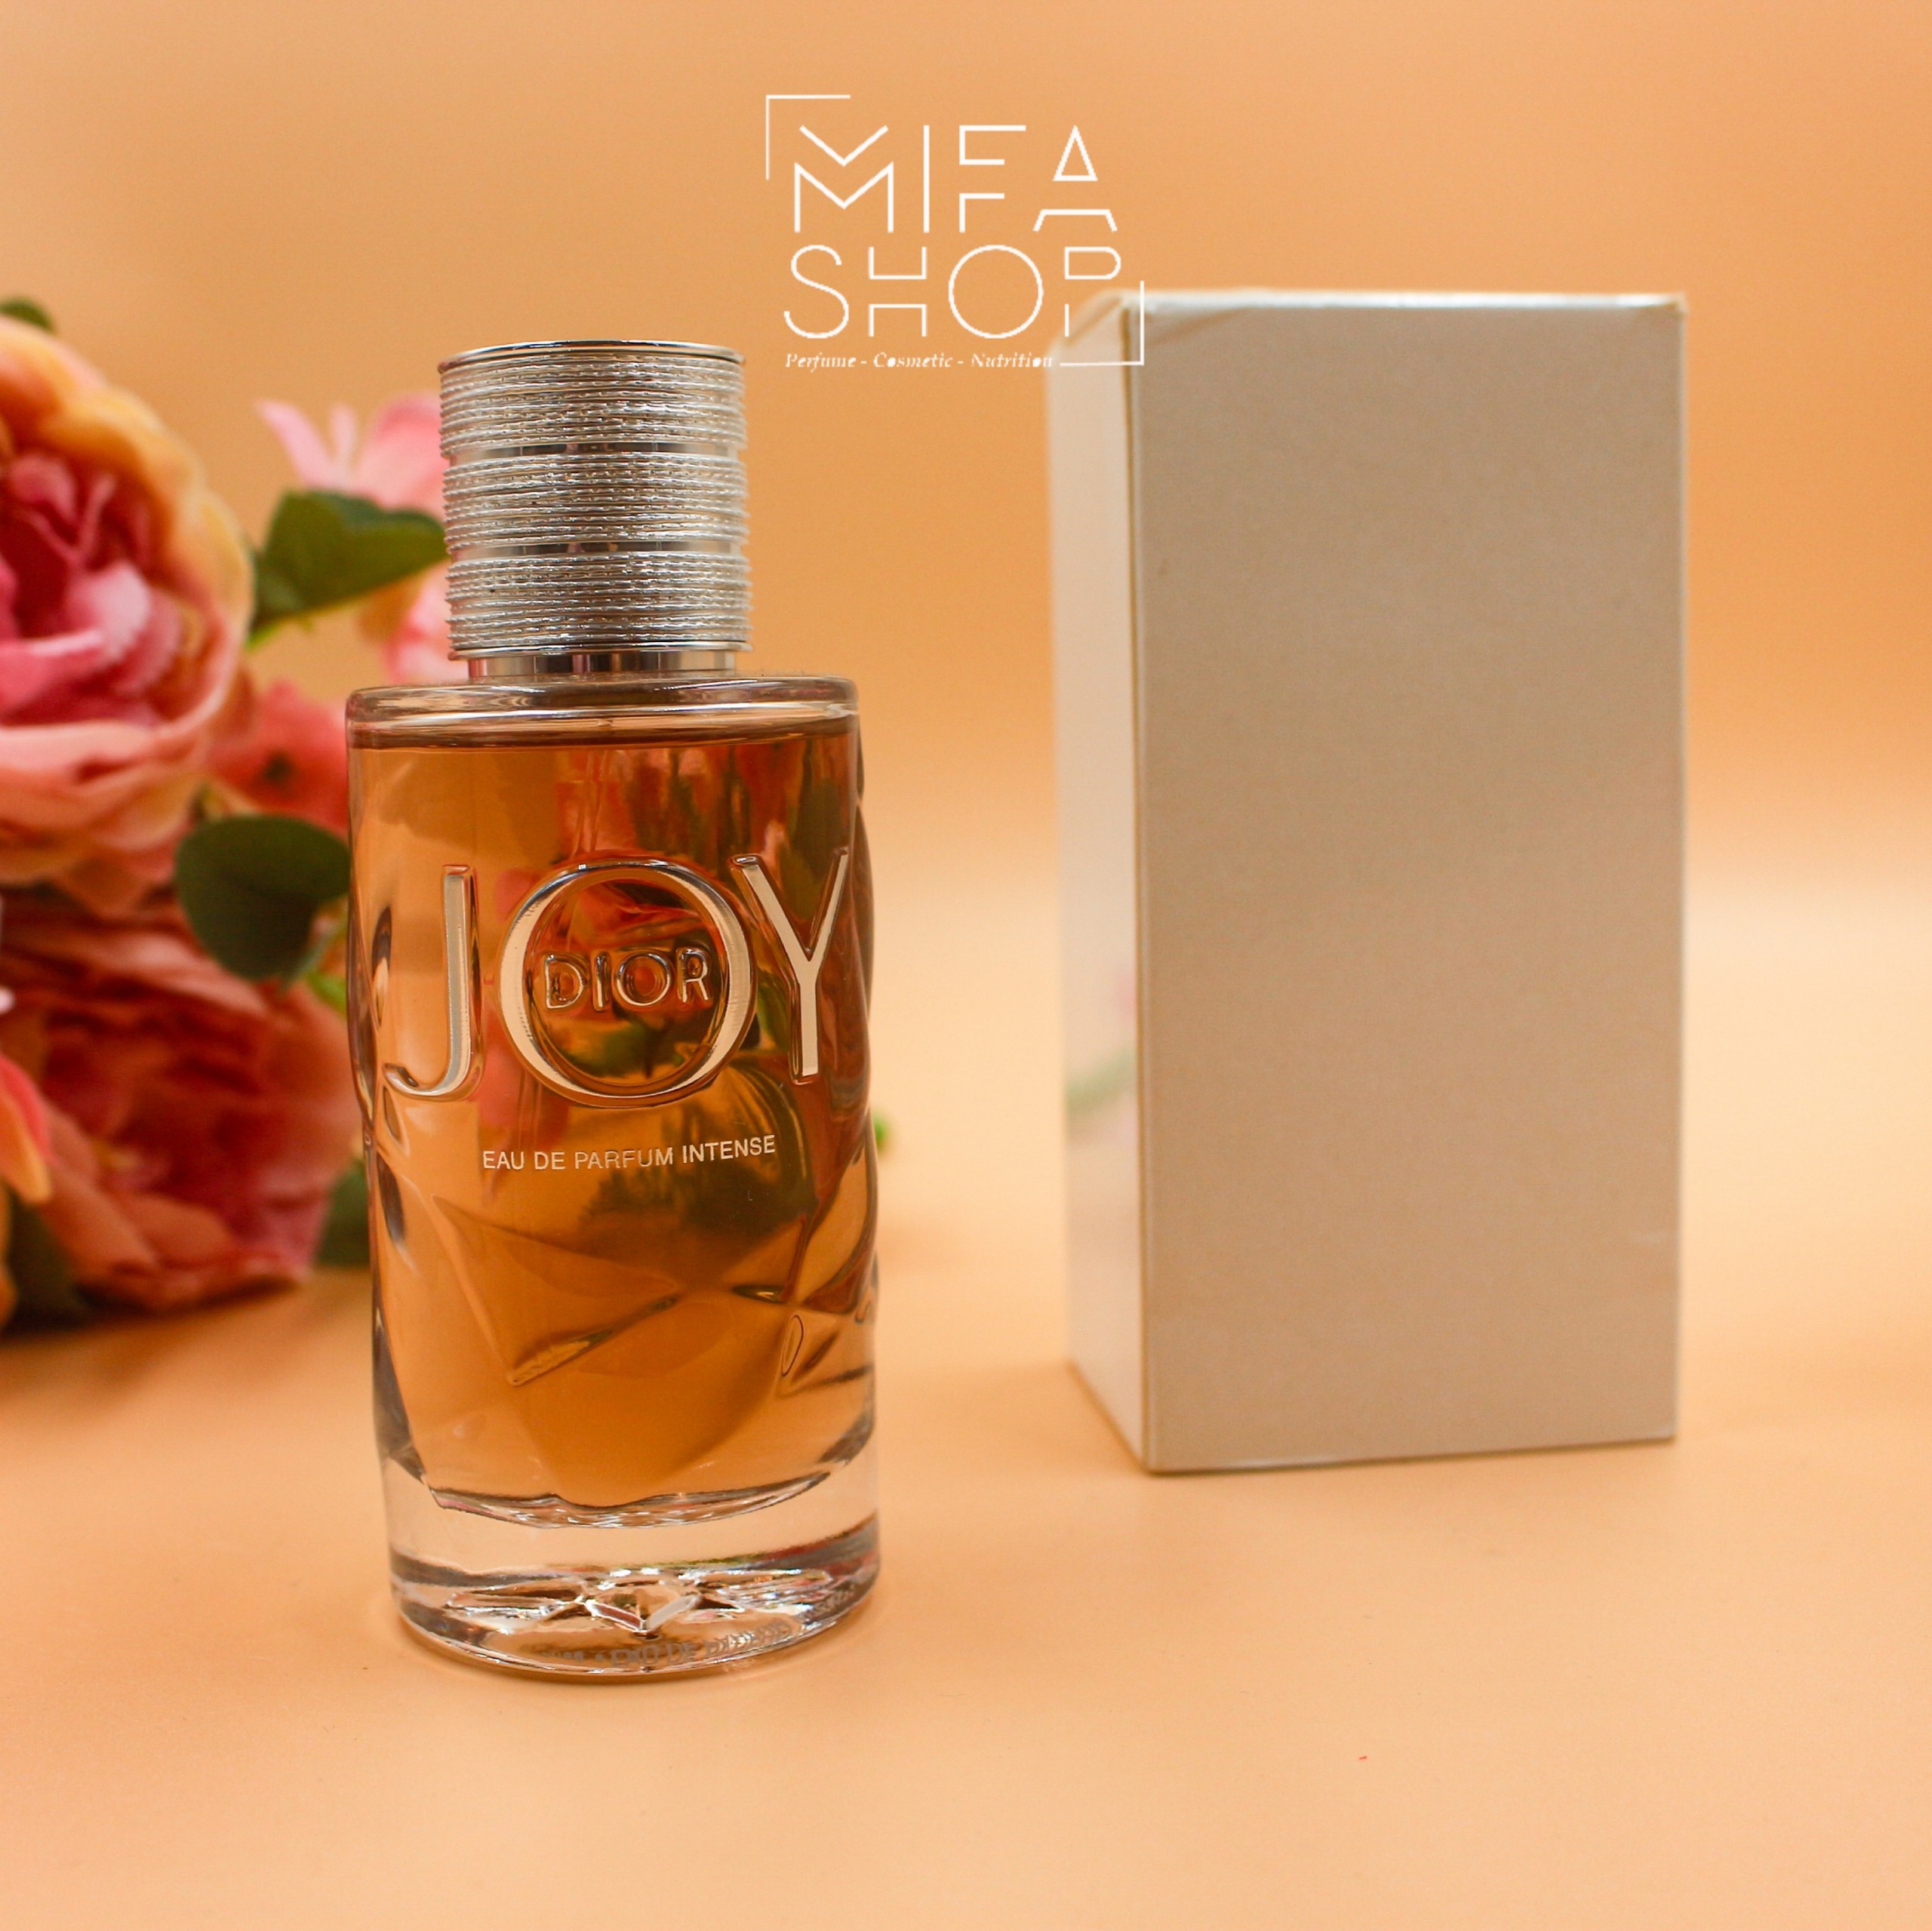 Nước hoa Joy by Dior Intense 30ml Eau De Parfum  Tươi Mới Nữ Tính